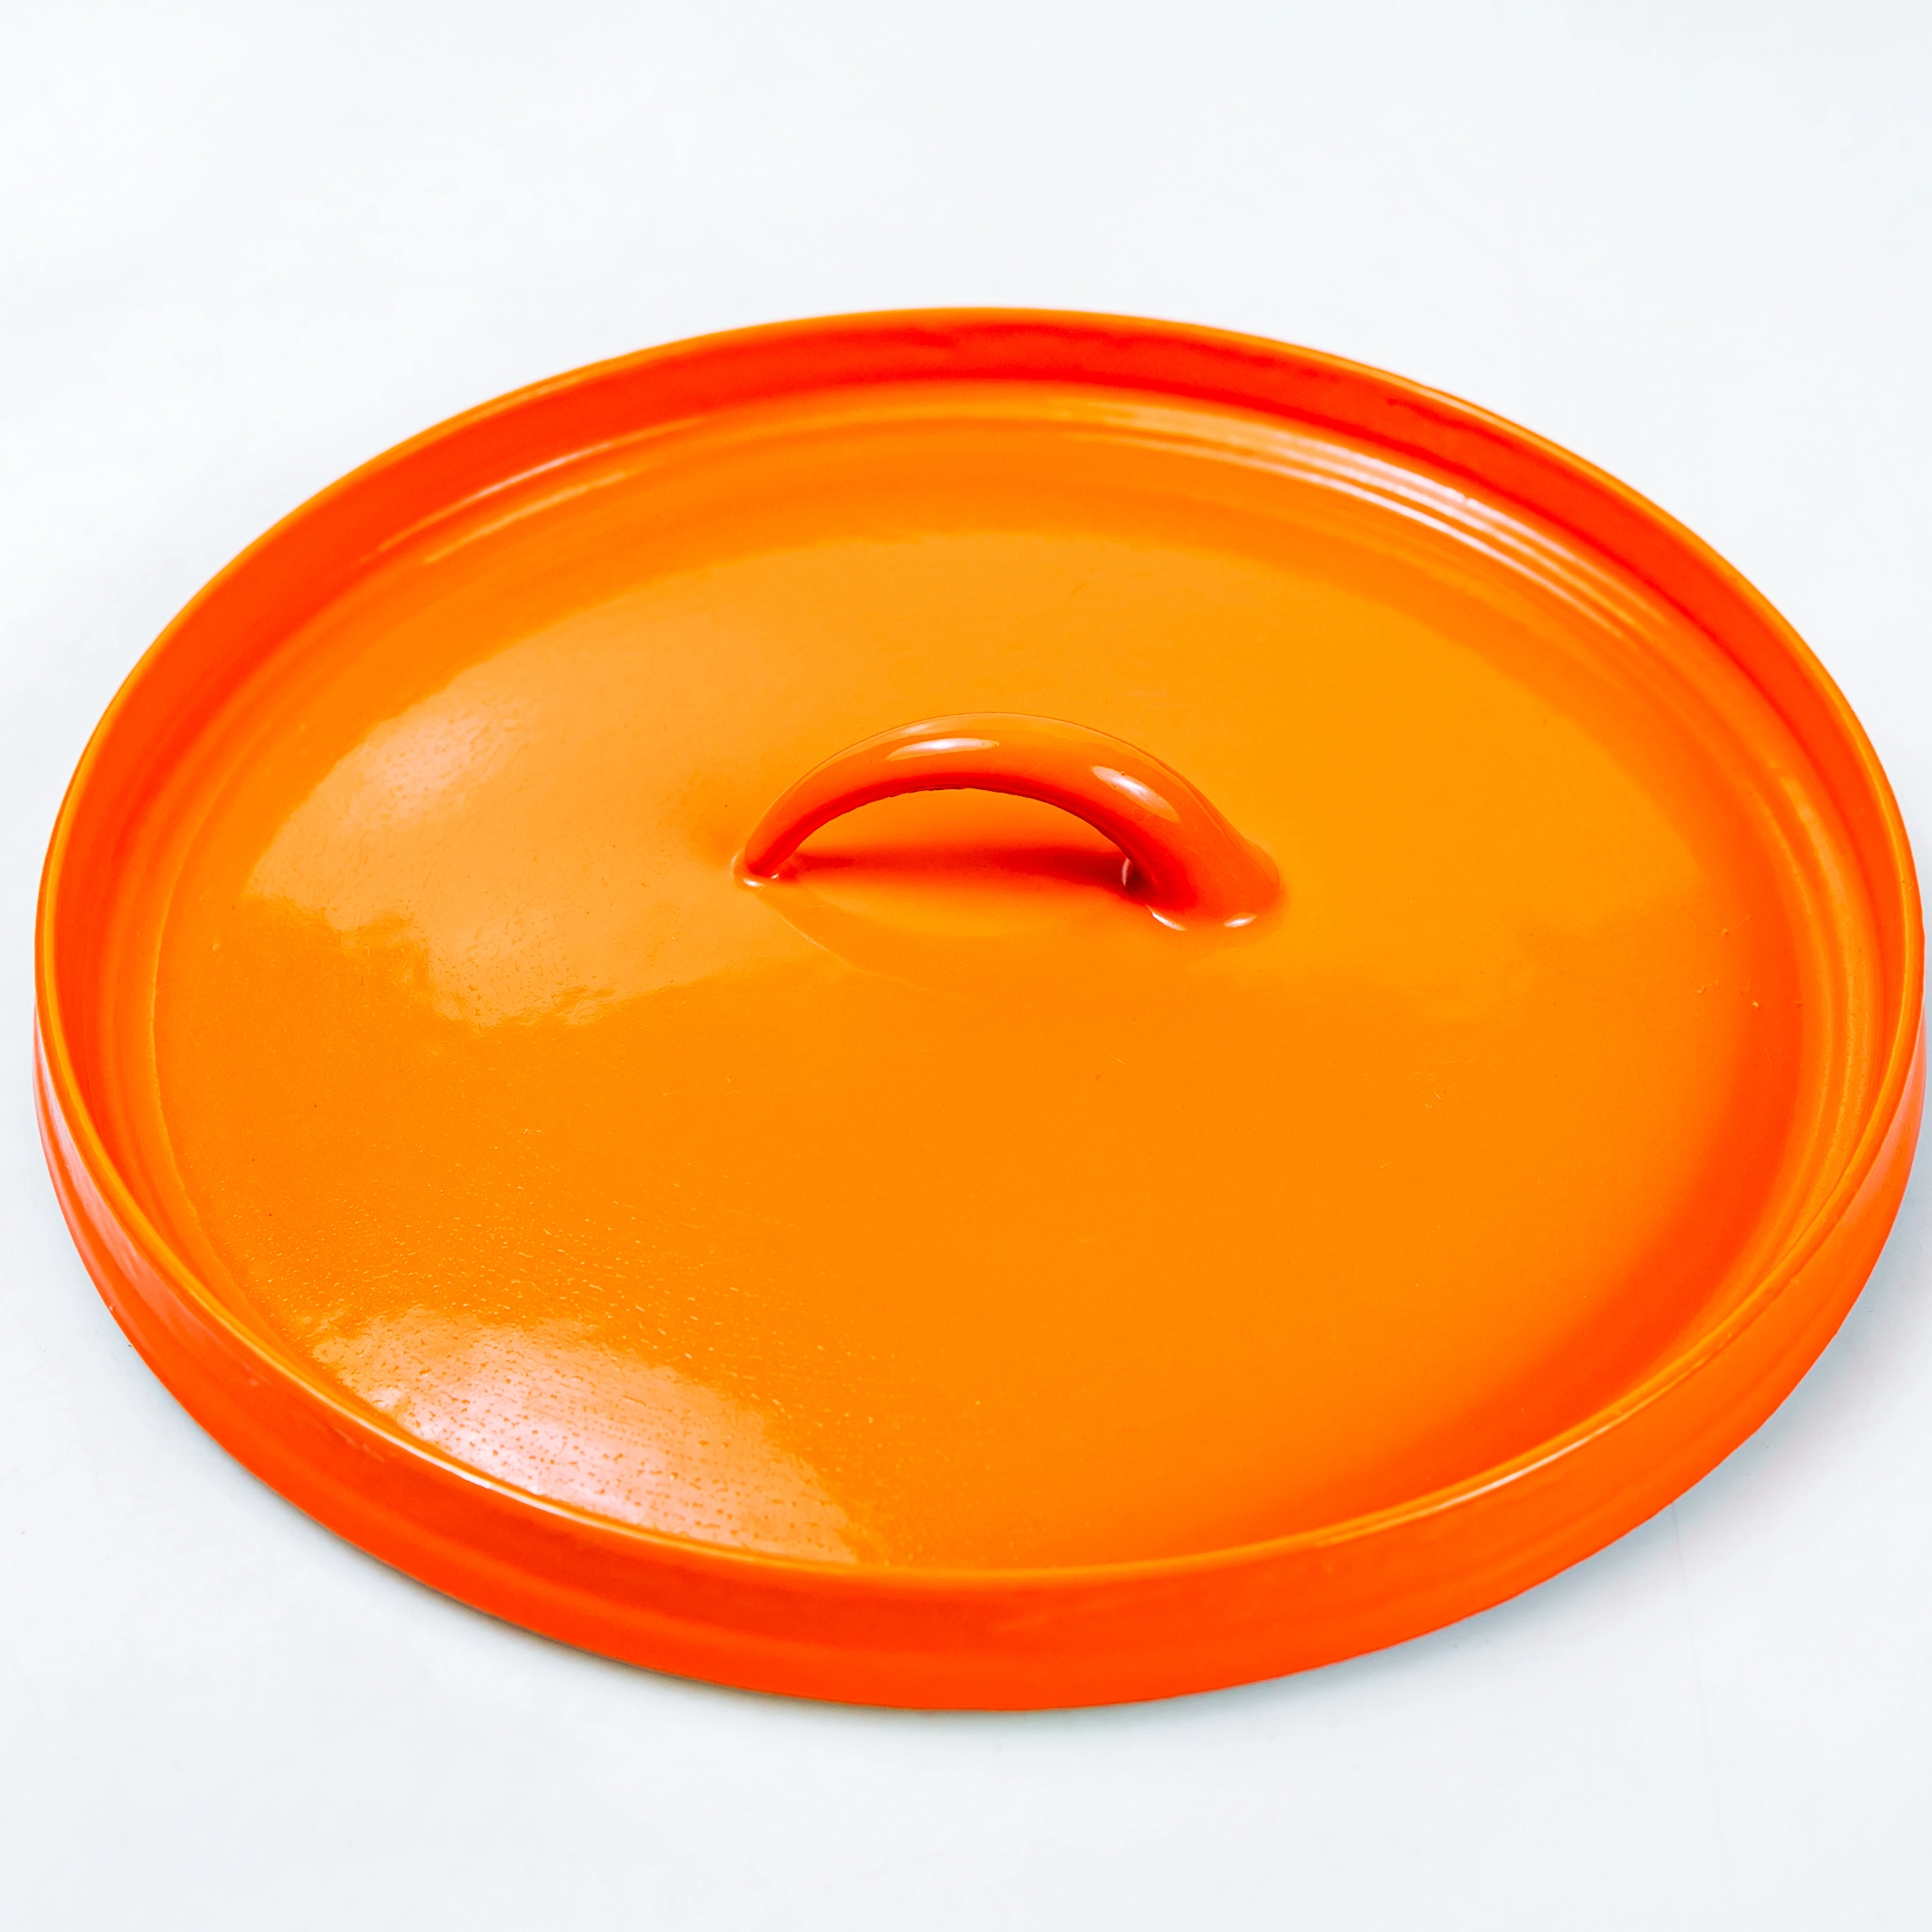 Cocotte de hierro fundido con revestimiento esmaltado naranja saludable